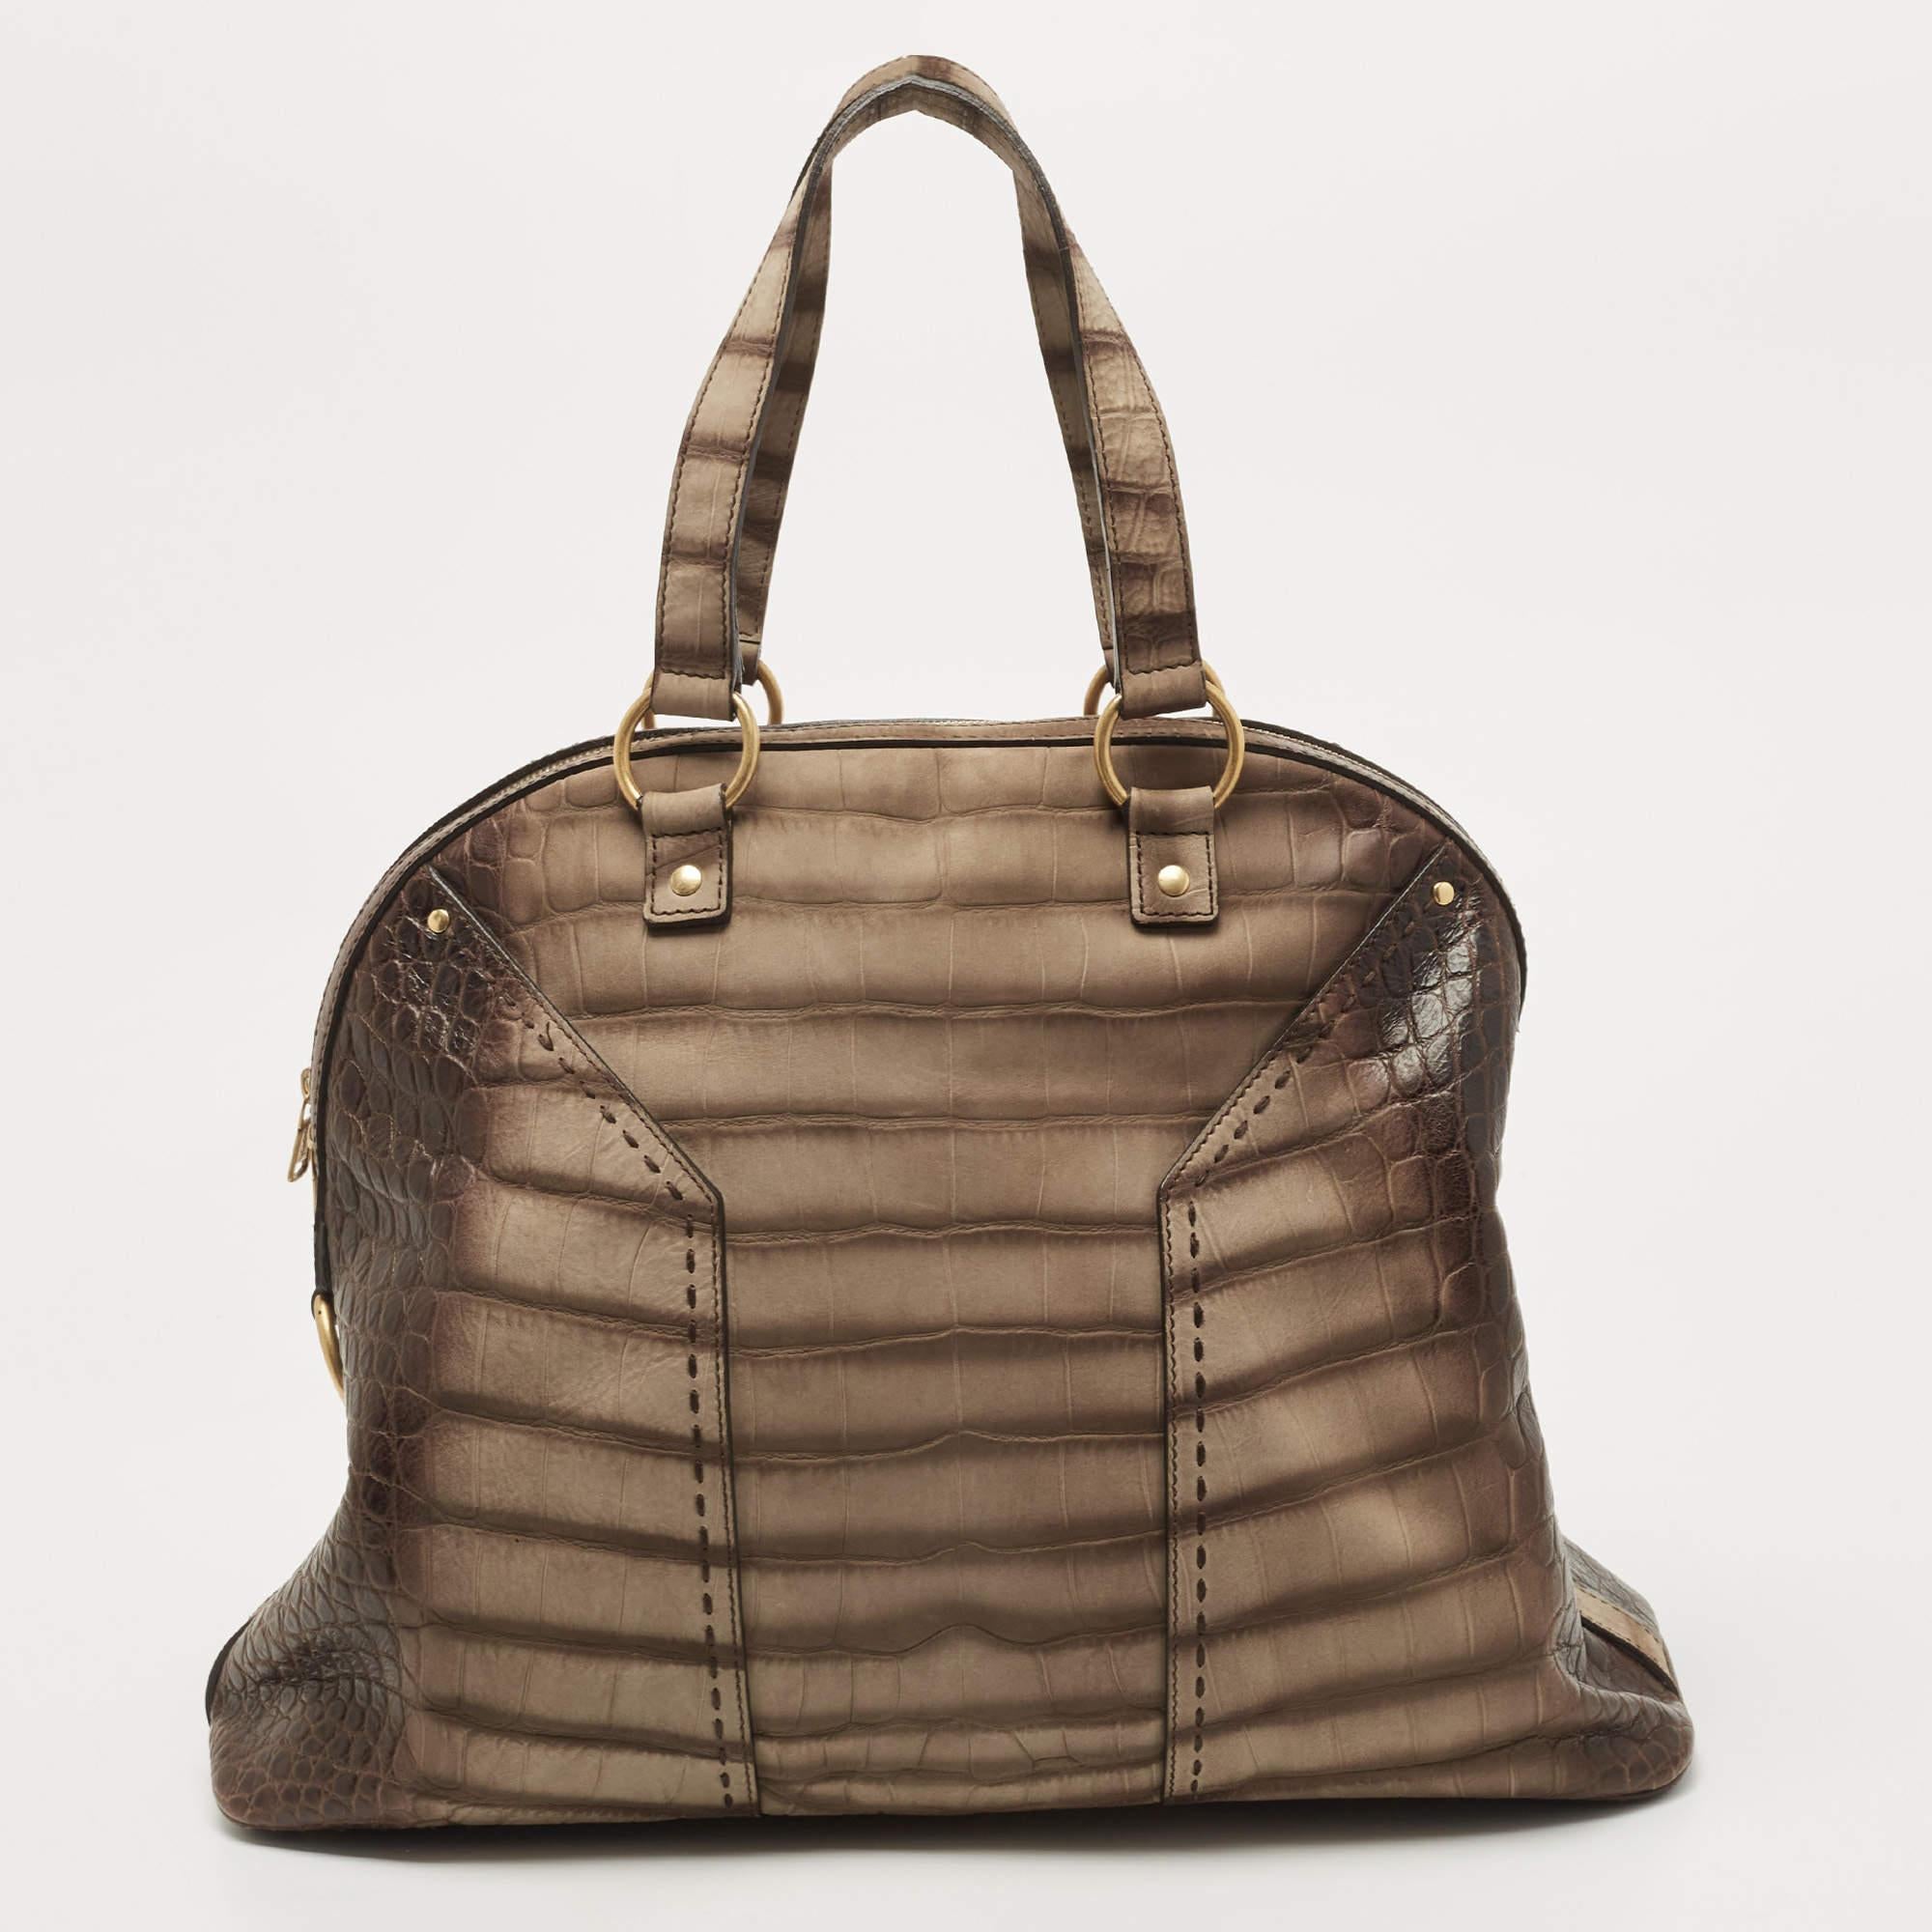 Complétez votre look quotidien avec ce sac Muse d'Yves Saint Laurent. Il a été confectionné en cuir gaufré de crocodile et est maintenu par deux poignées. Le sac est doté d'une fermeture à glissière qui mène à un intérieur spacieux en satin, et il